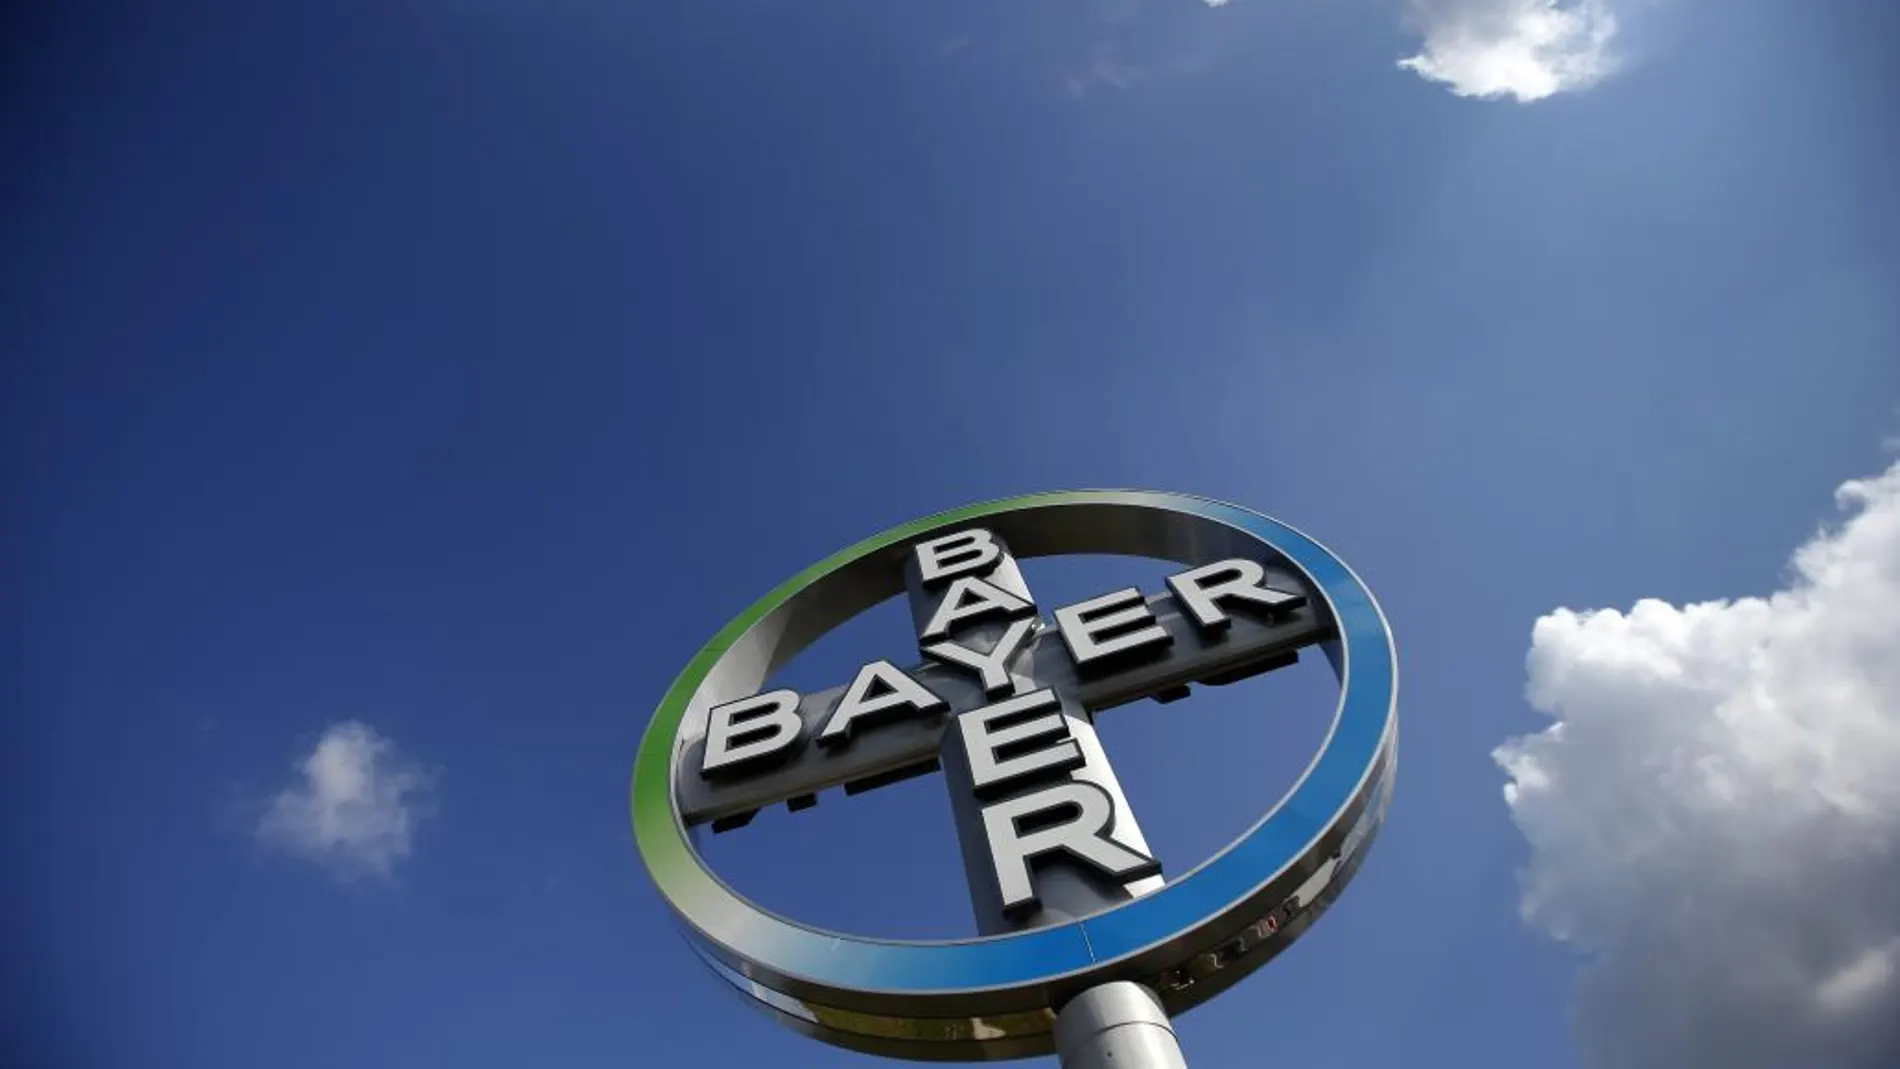 Bayer argumenta que la demanda de Essure por parte de las mujeres «ha disminuido significativamente en los últimos años»